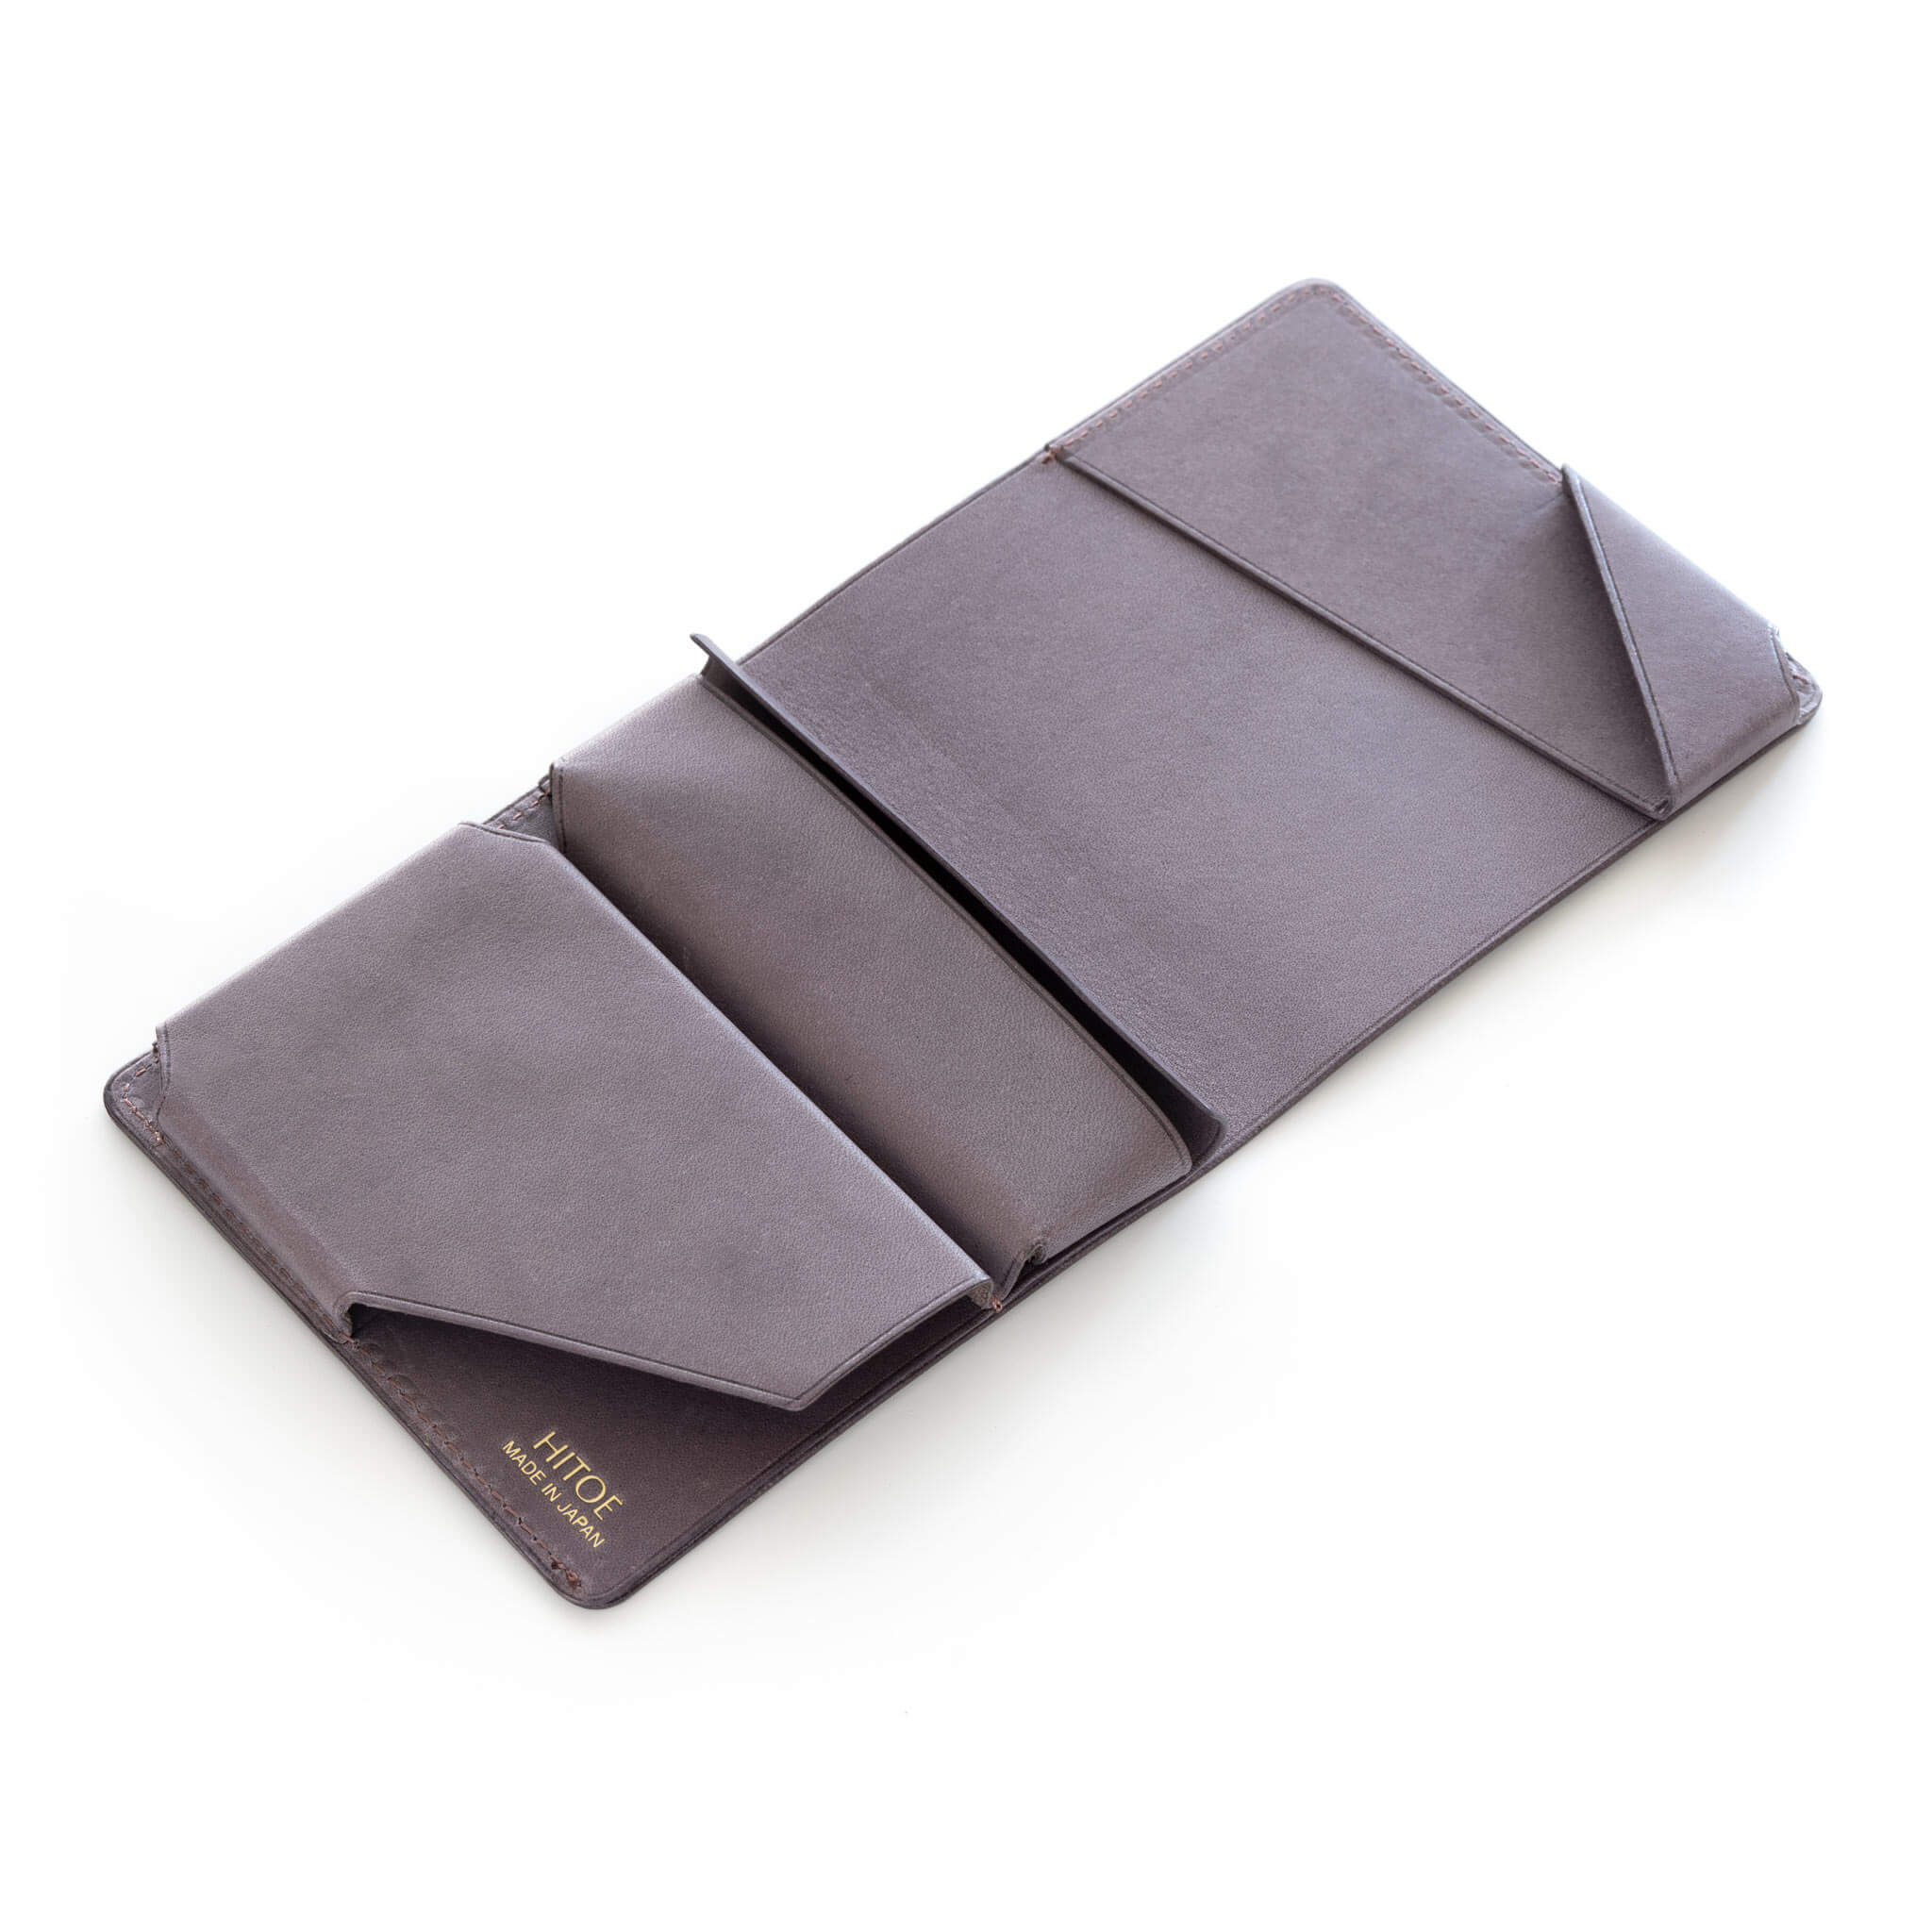 世界のデザイン賞11冠】小さな薄い財布Hitoe Fold Aria - Foschia | SYRINX